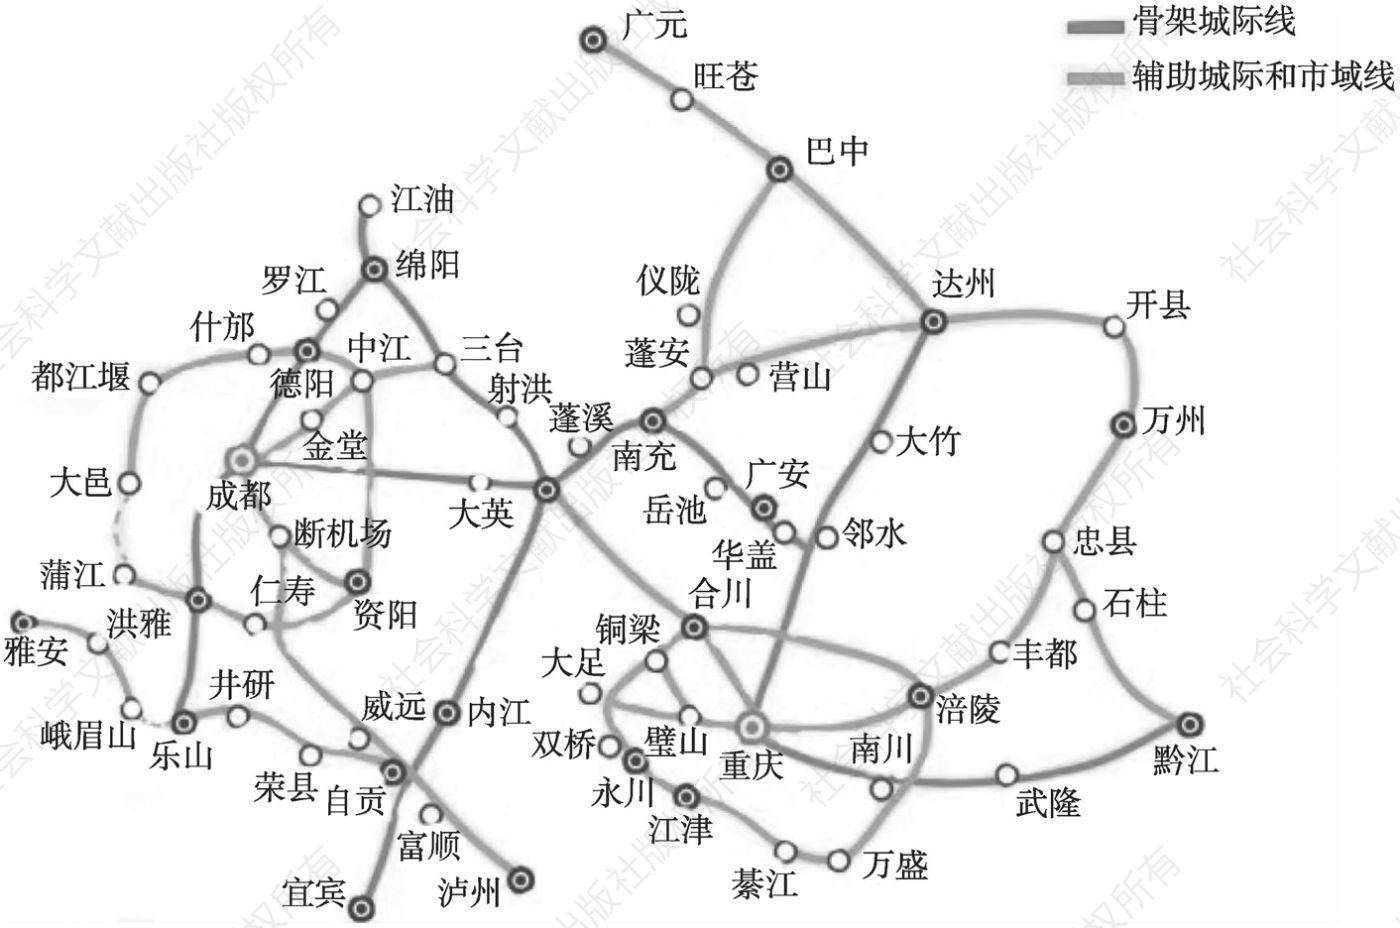 图1 成渝城市群、成都都市圈、重庆都市圈交通骨干网络规划示意